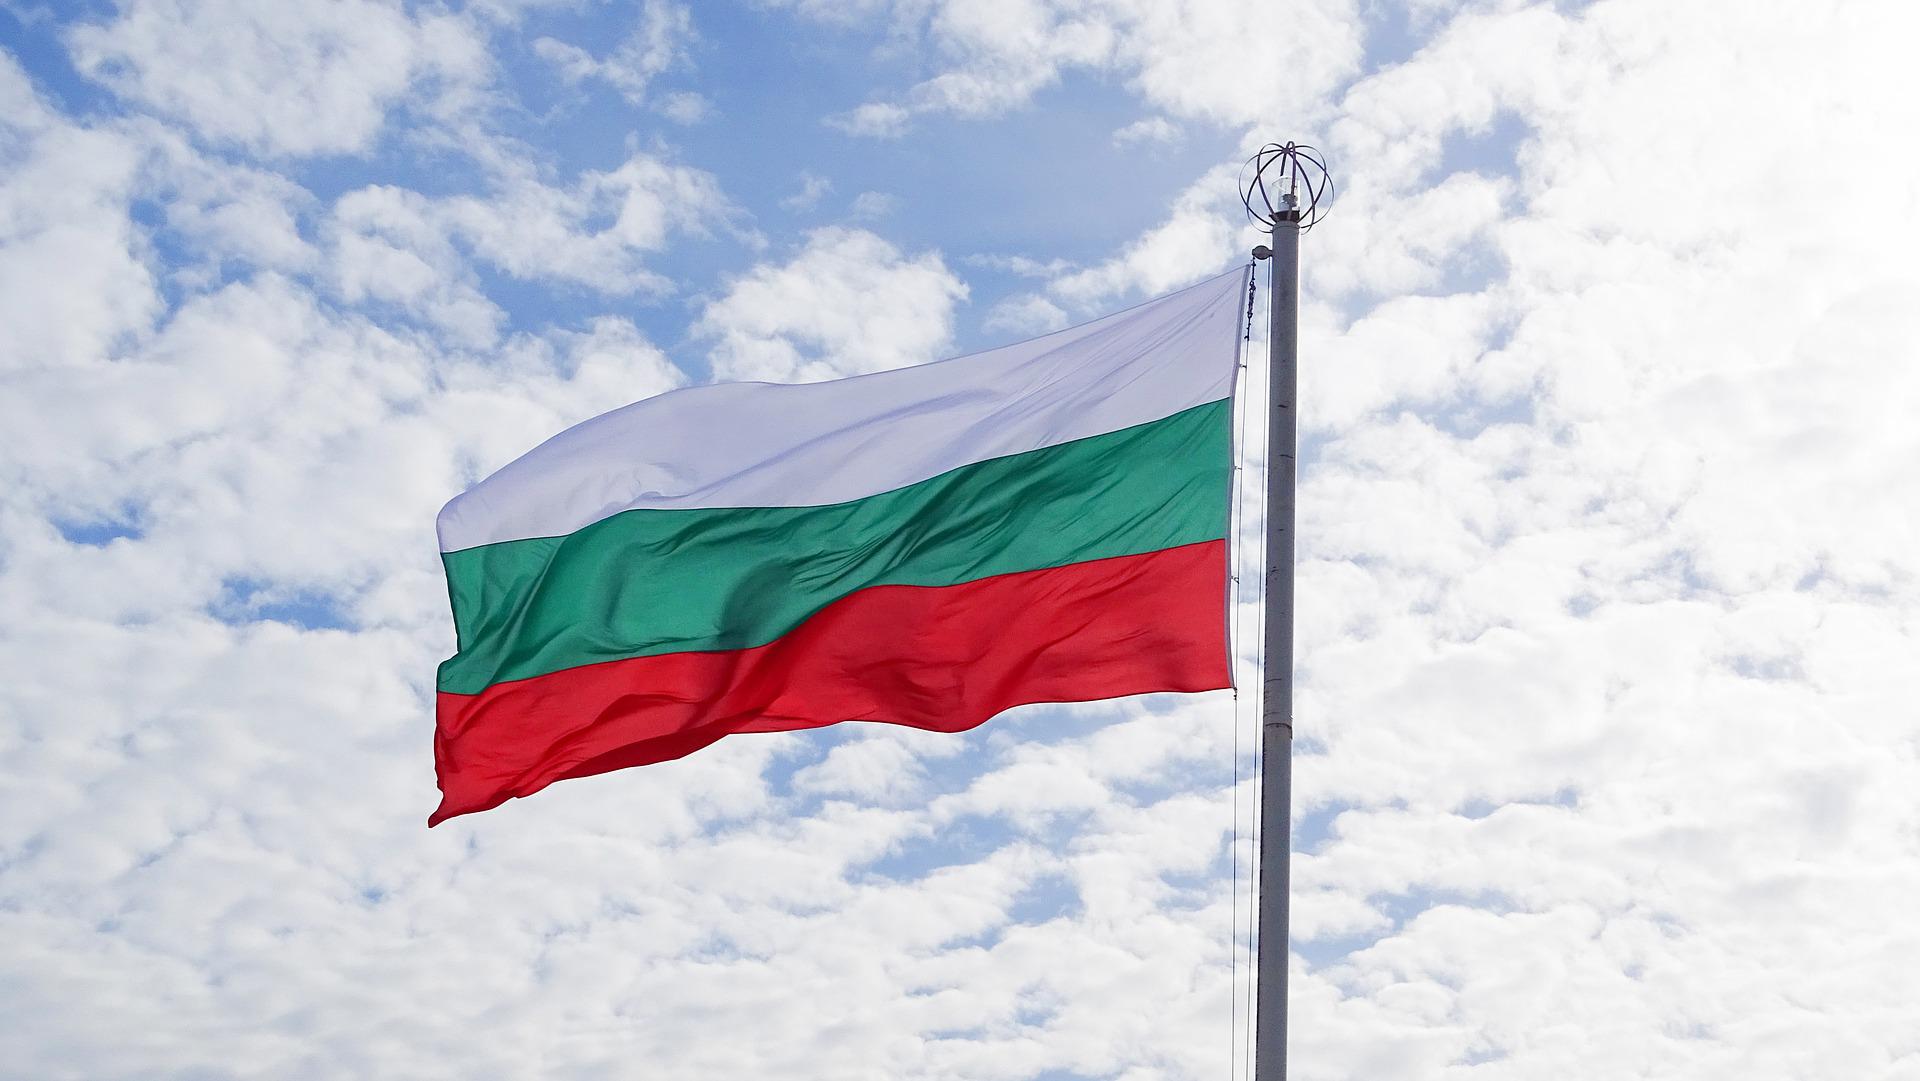 Βουλγαρία: Κατά σχεδόν 2 φορές αυξήθηκε το κατά κεφαλήν εισόδημα μέσα στα τελευταία 10 χρόνια